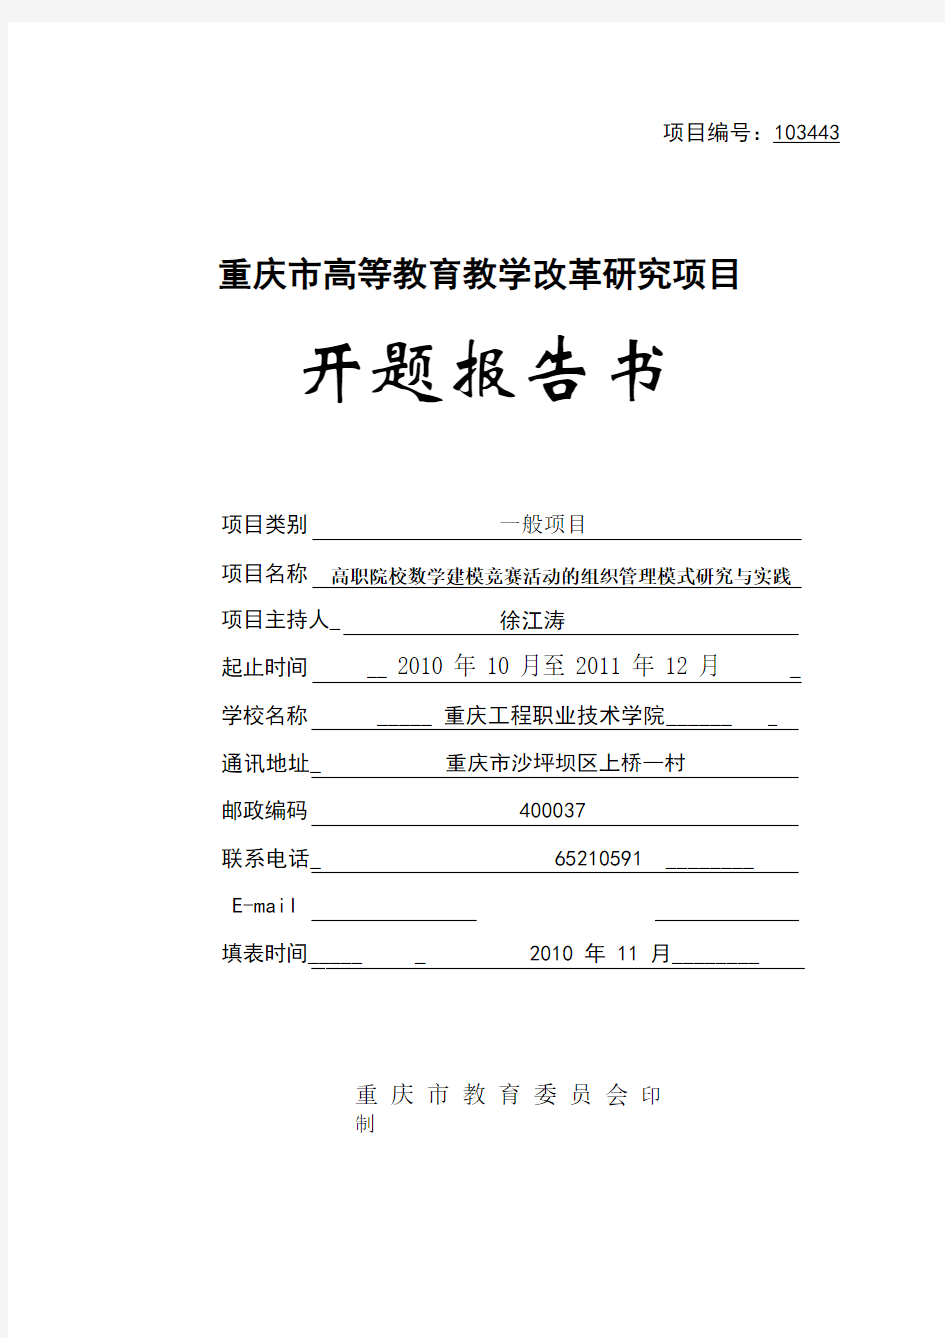 重庆市高等教育教学改革研究项目开题报告书